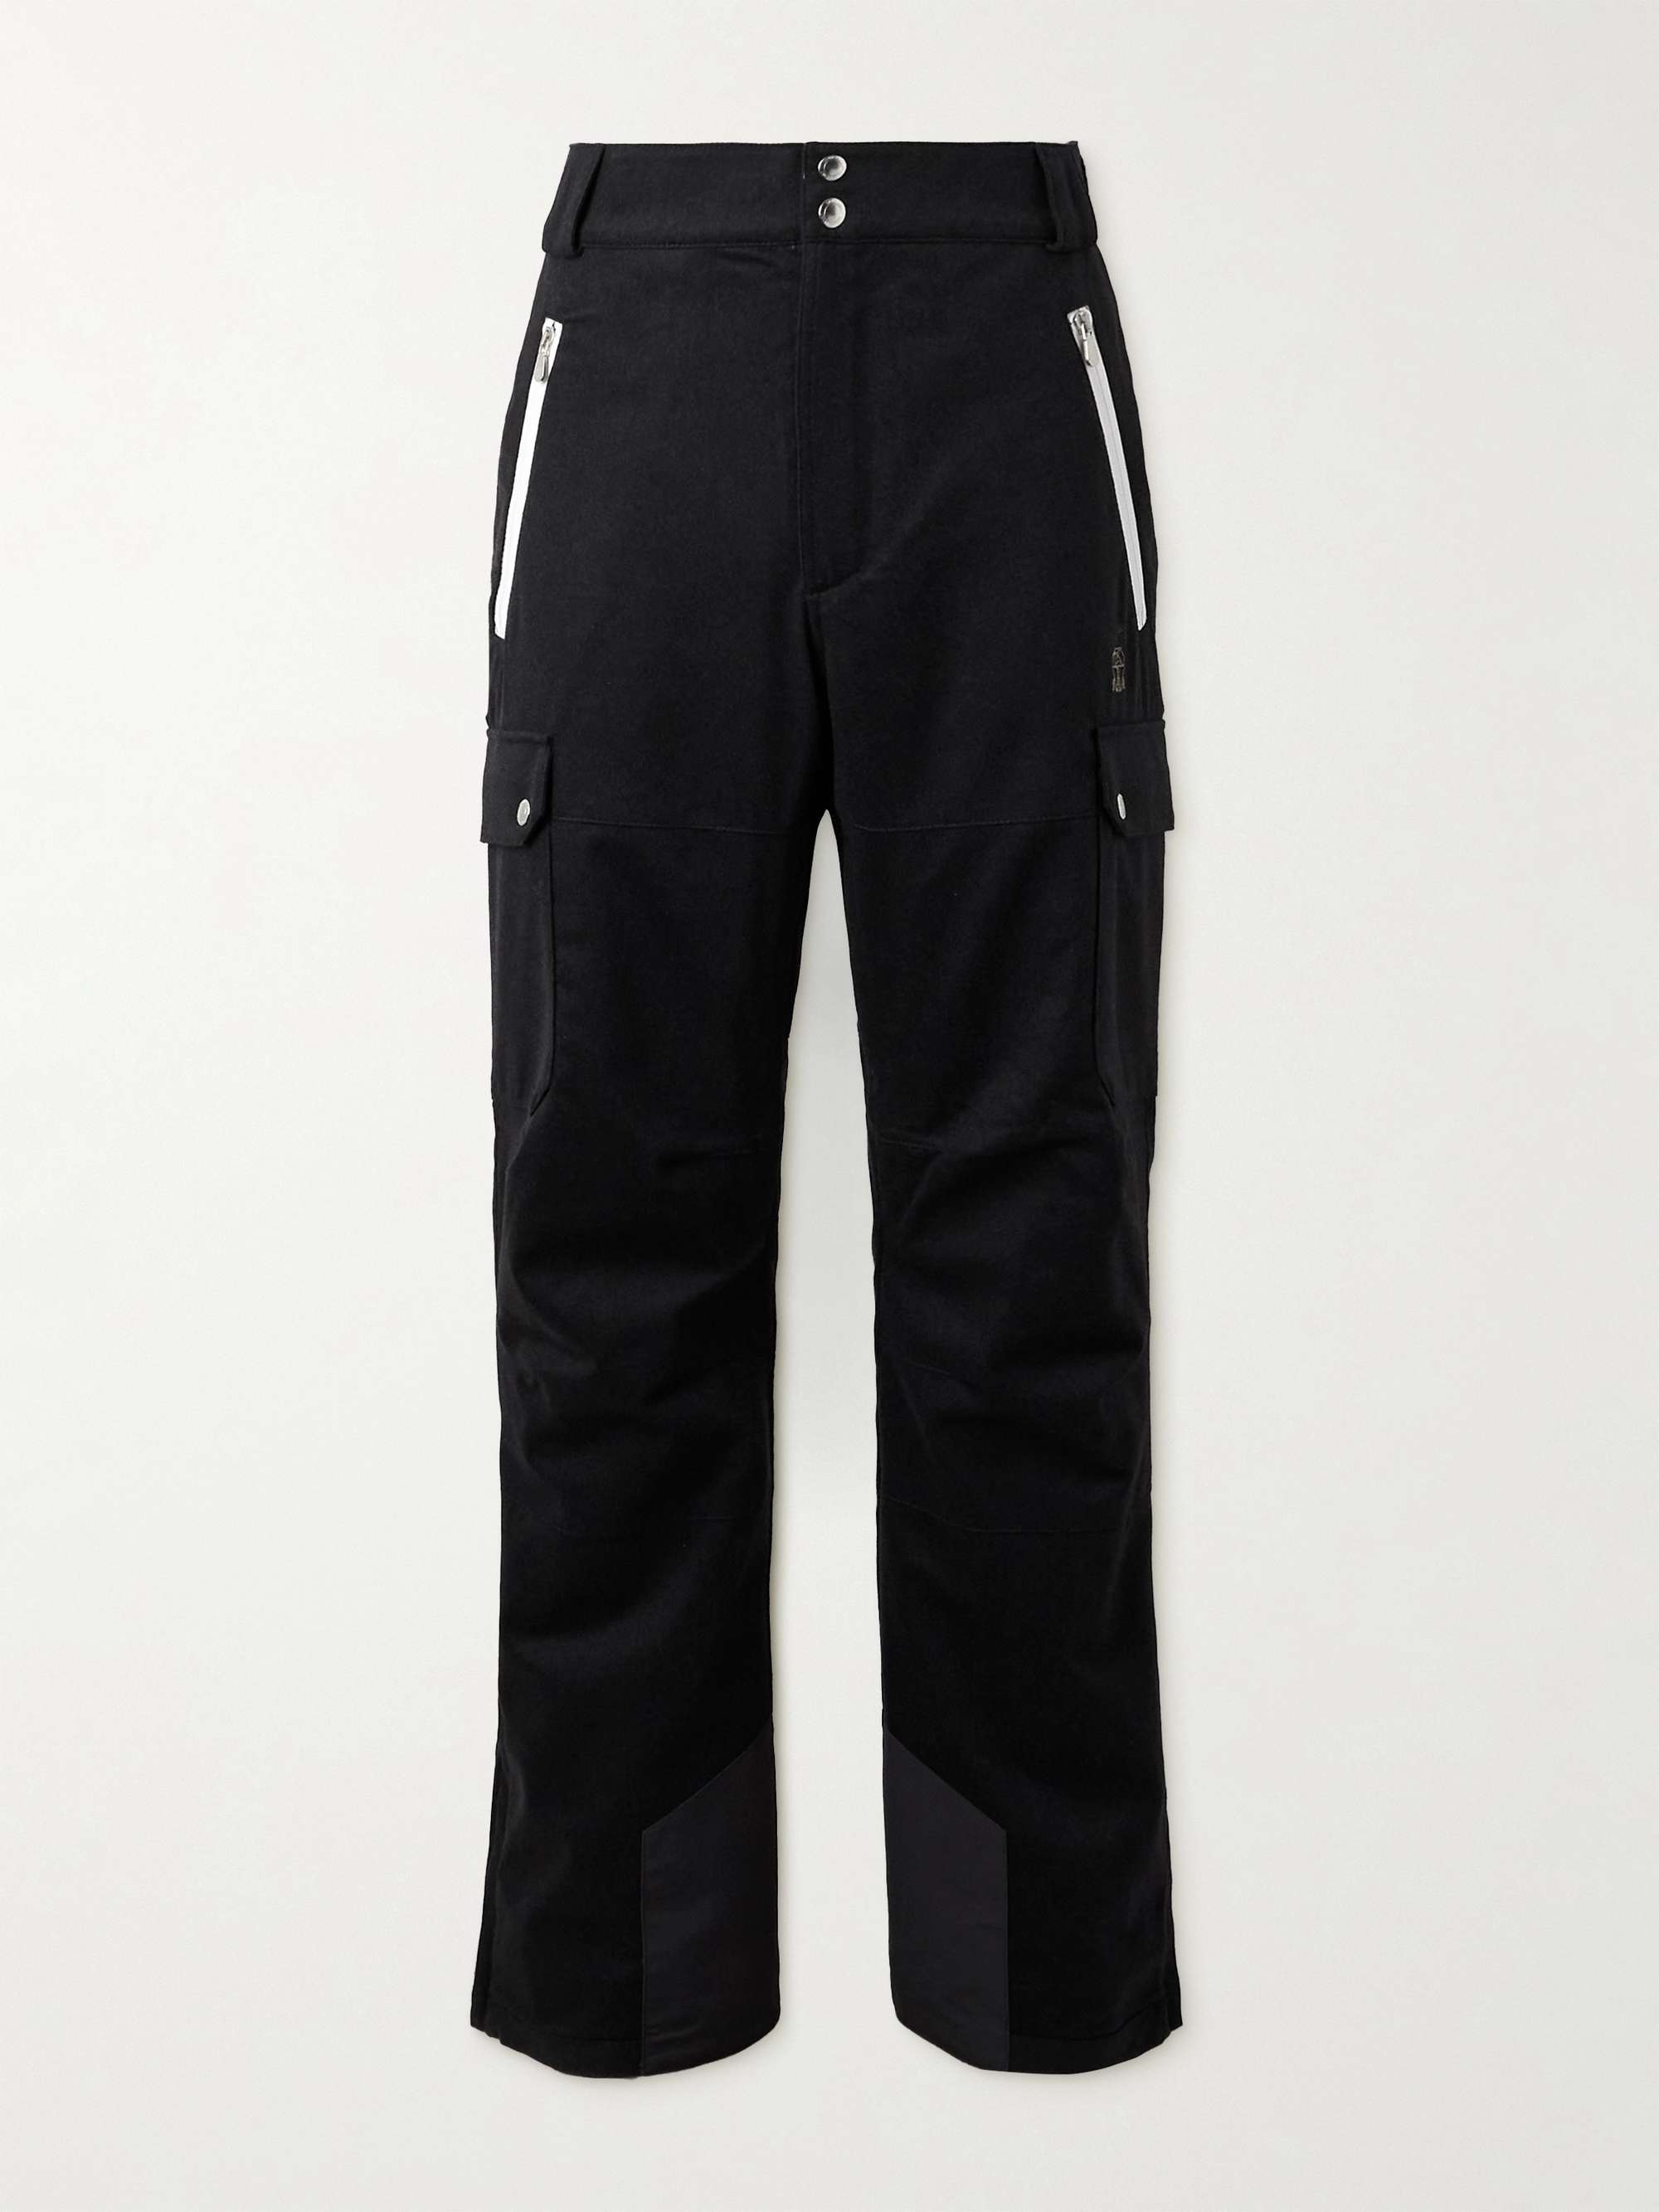 Men's Ski Pants Lukas | Toper - Sportswear shop